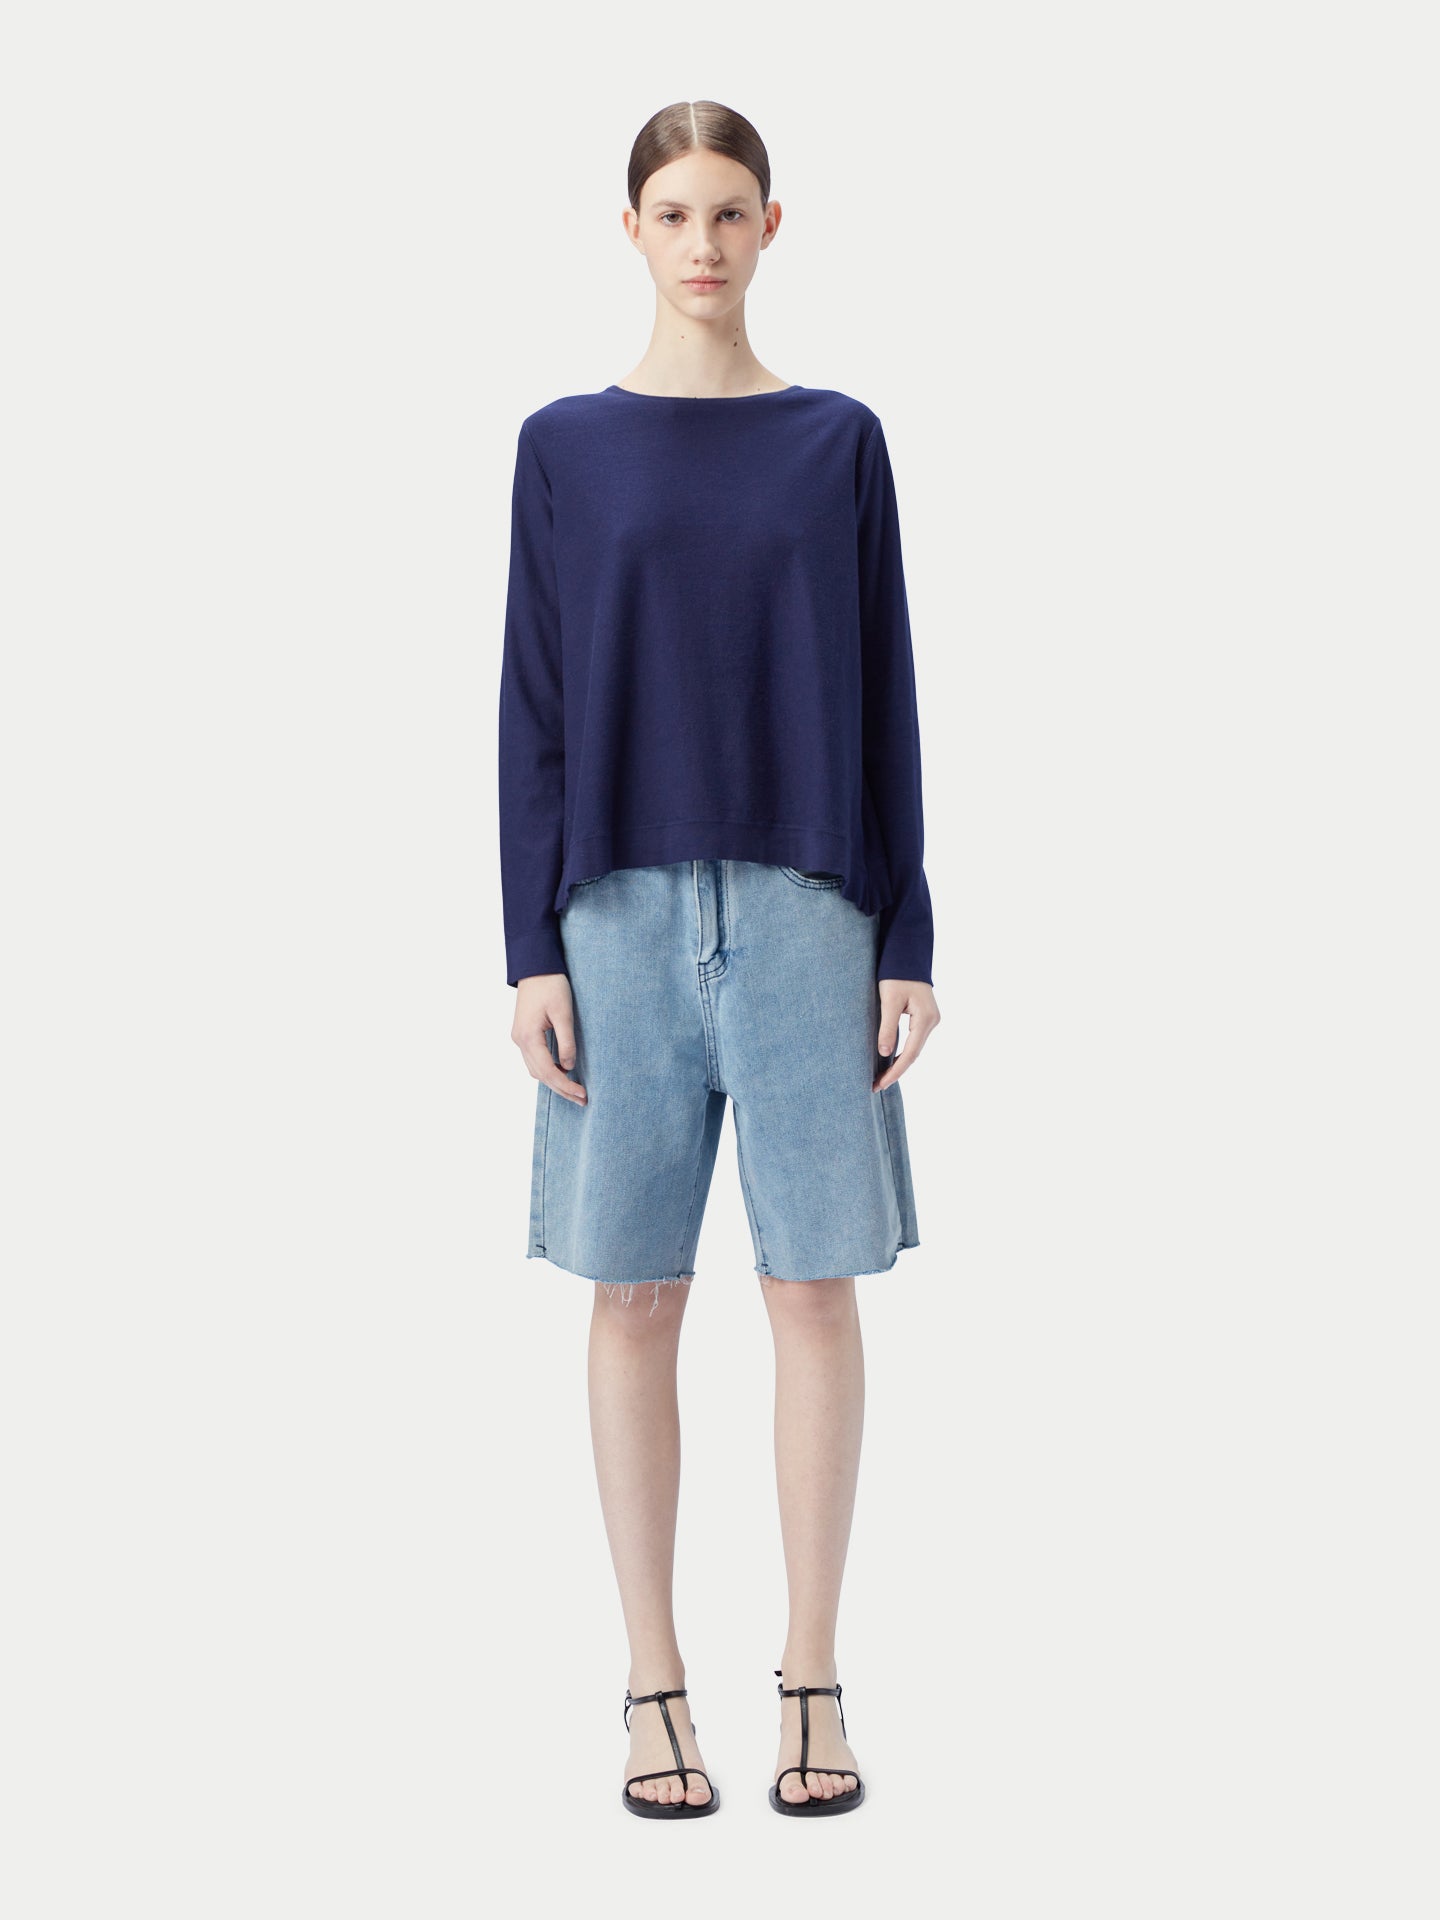 Women's Boatneck Cotton Silk Cashmere Blend Sweater Navy - Gobi Cashmere